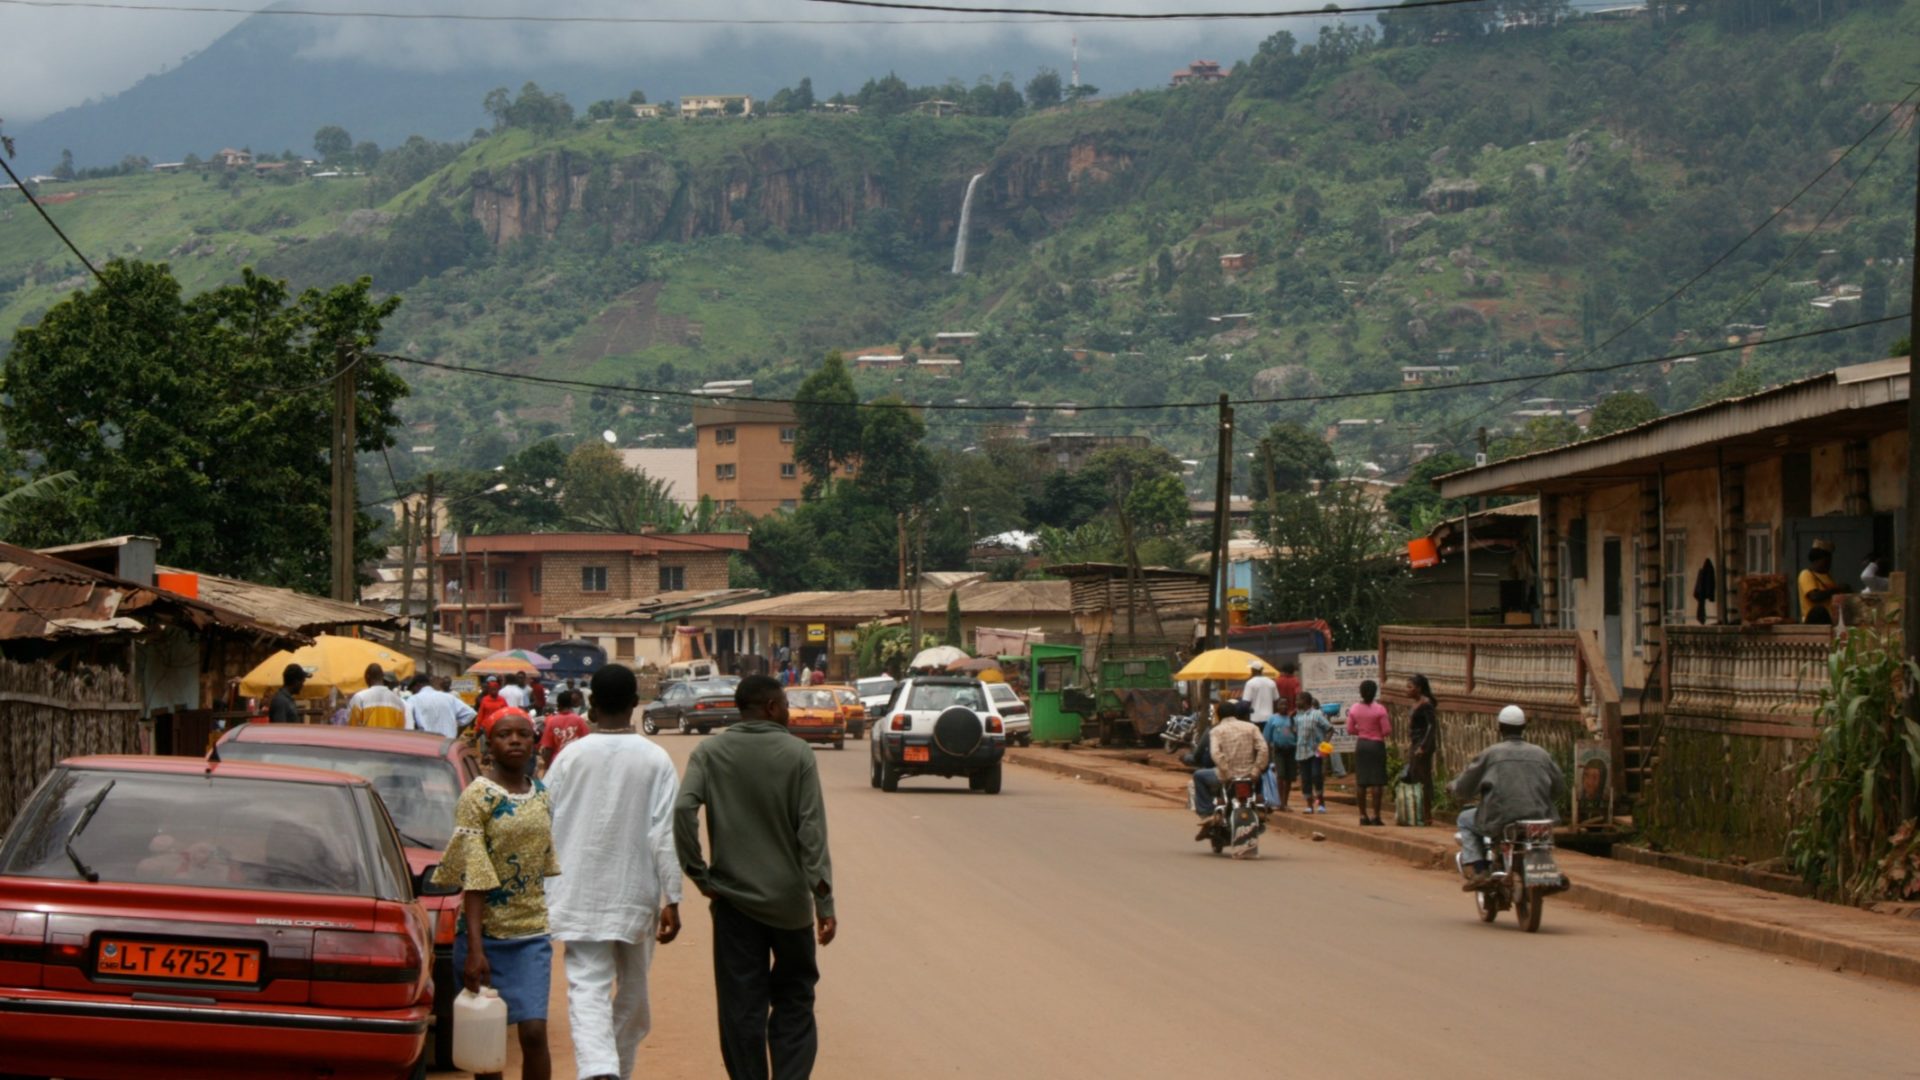 A Bamenda, à l'ouest du Cameroun, la majorité de la population parle anglais (Photo:rbairdpccam/Flickr/CC BY-NC 2.0)